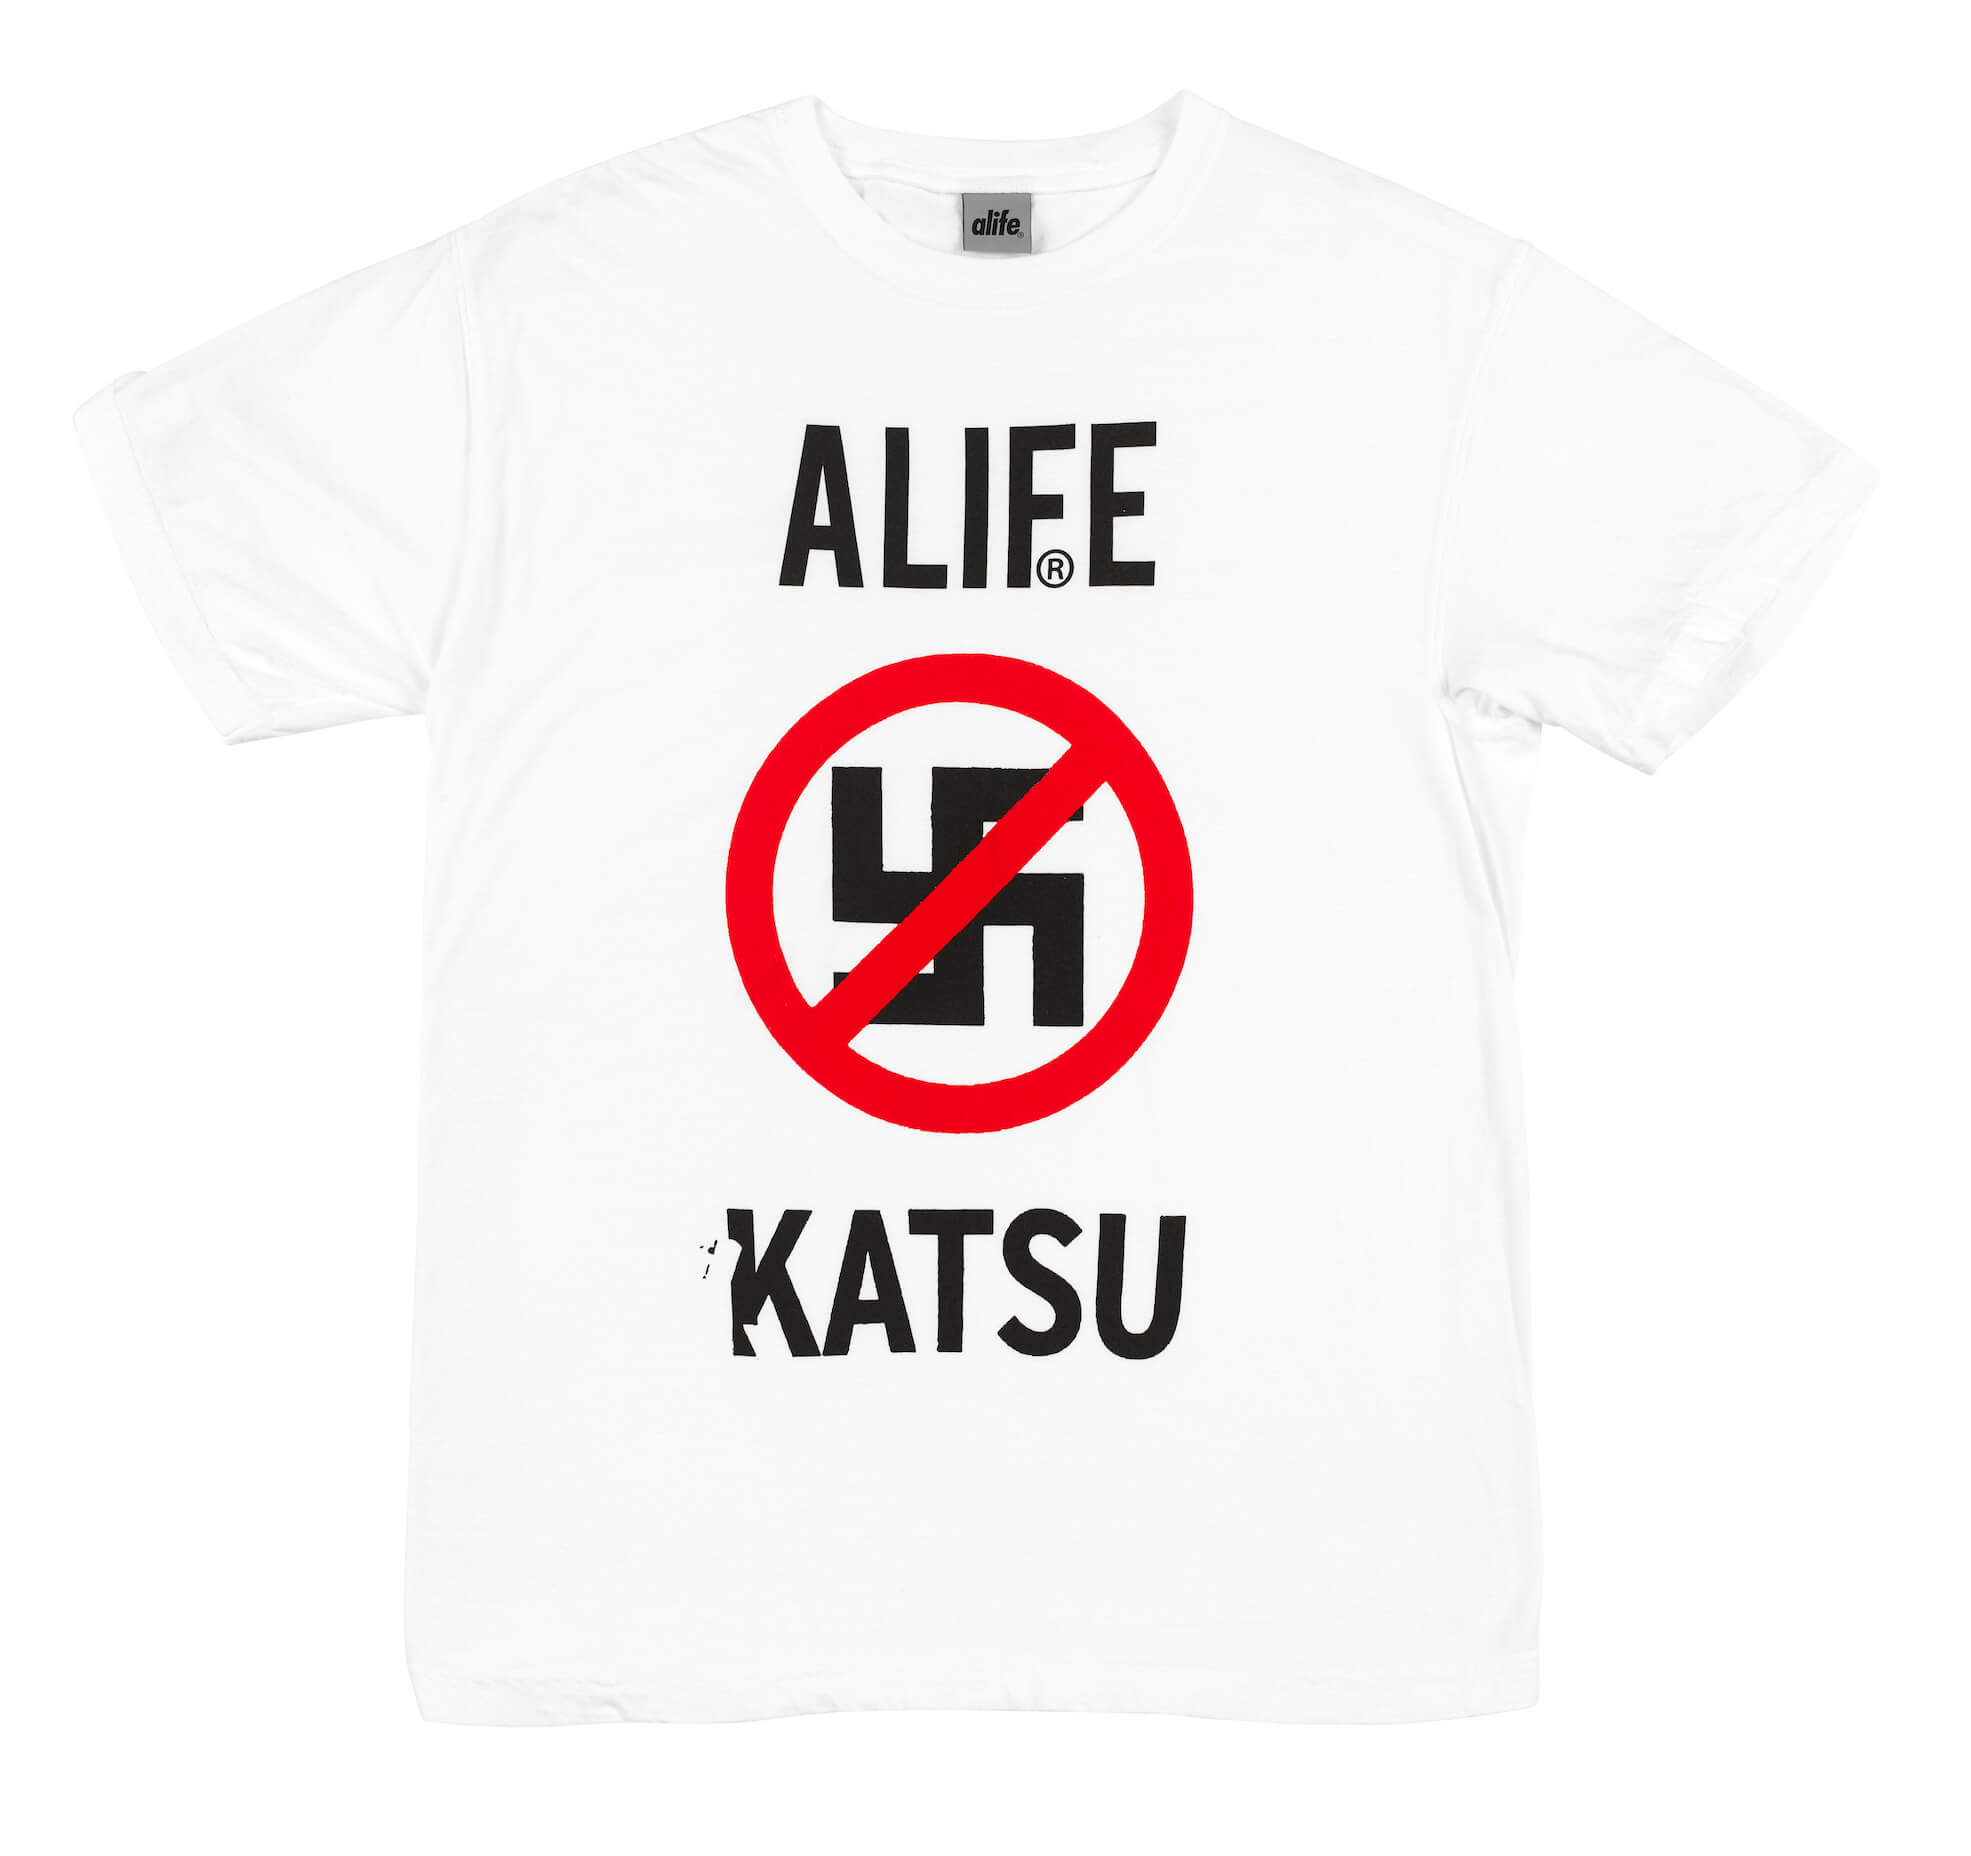 Alife y el artista Katsu en revolucionaria colección